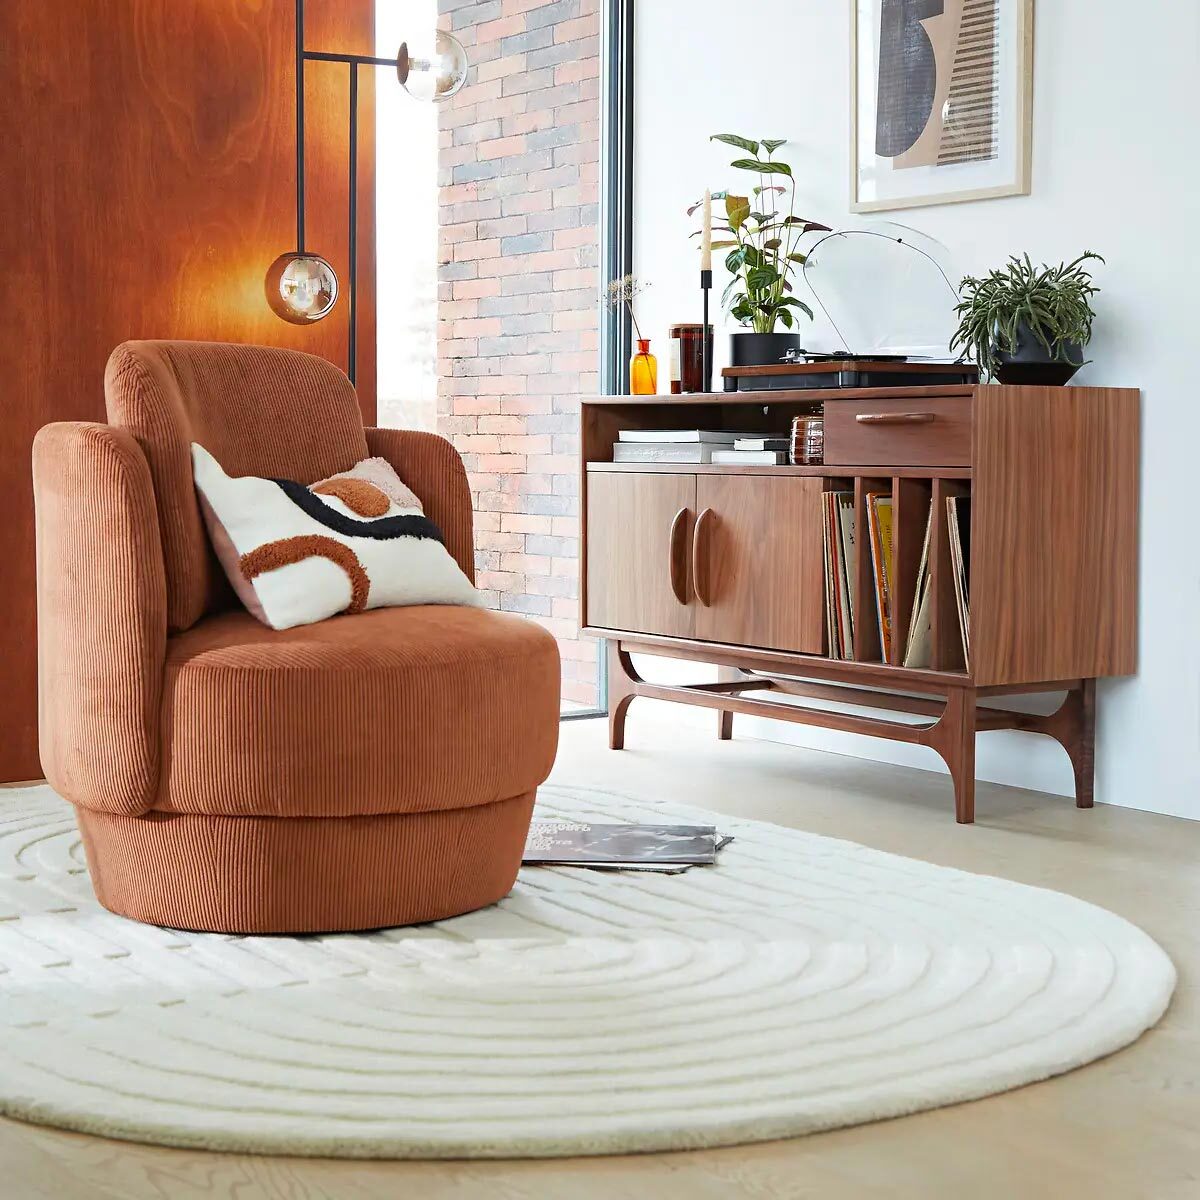 fauteuil rond marron tapis blanc mur bois mobilier